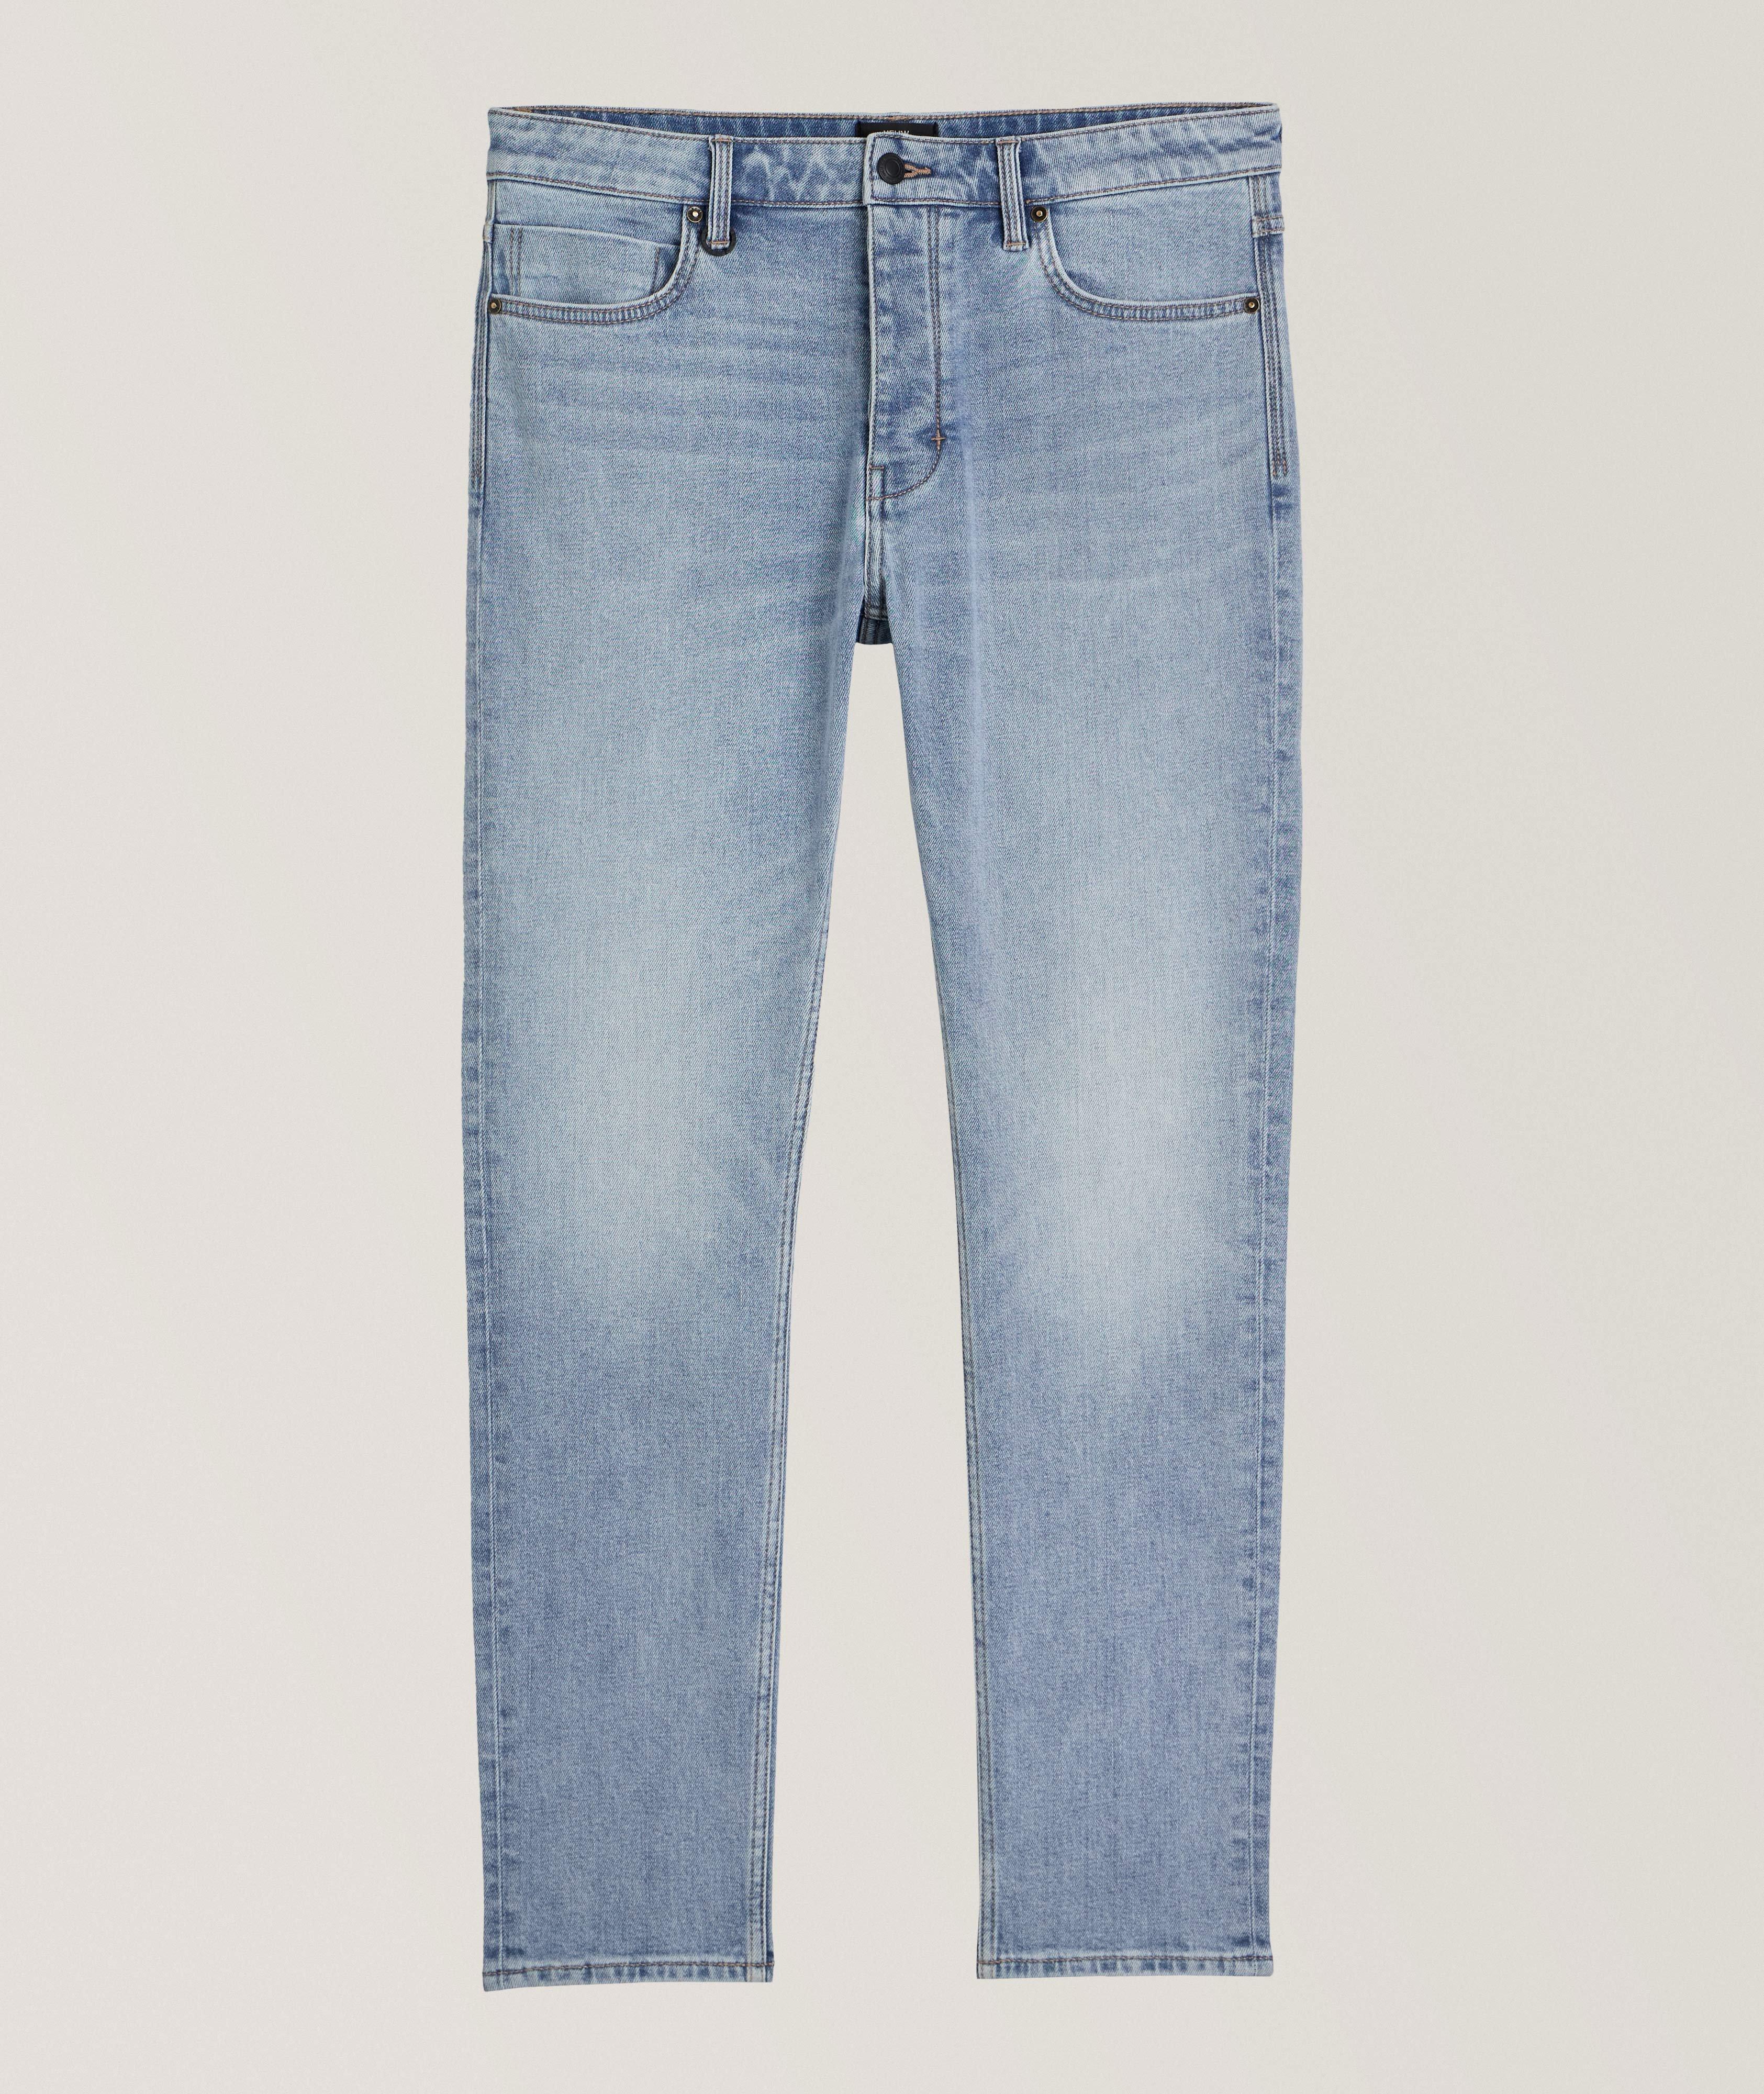 Lou Slim Alloy Cotton-Blend Jeans image 0